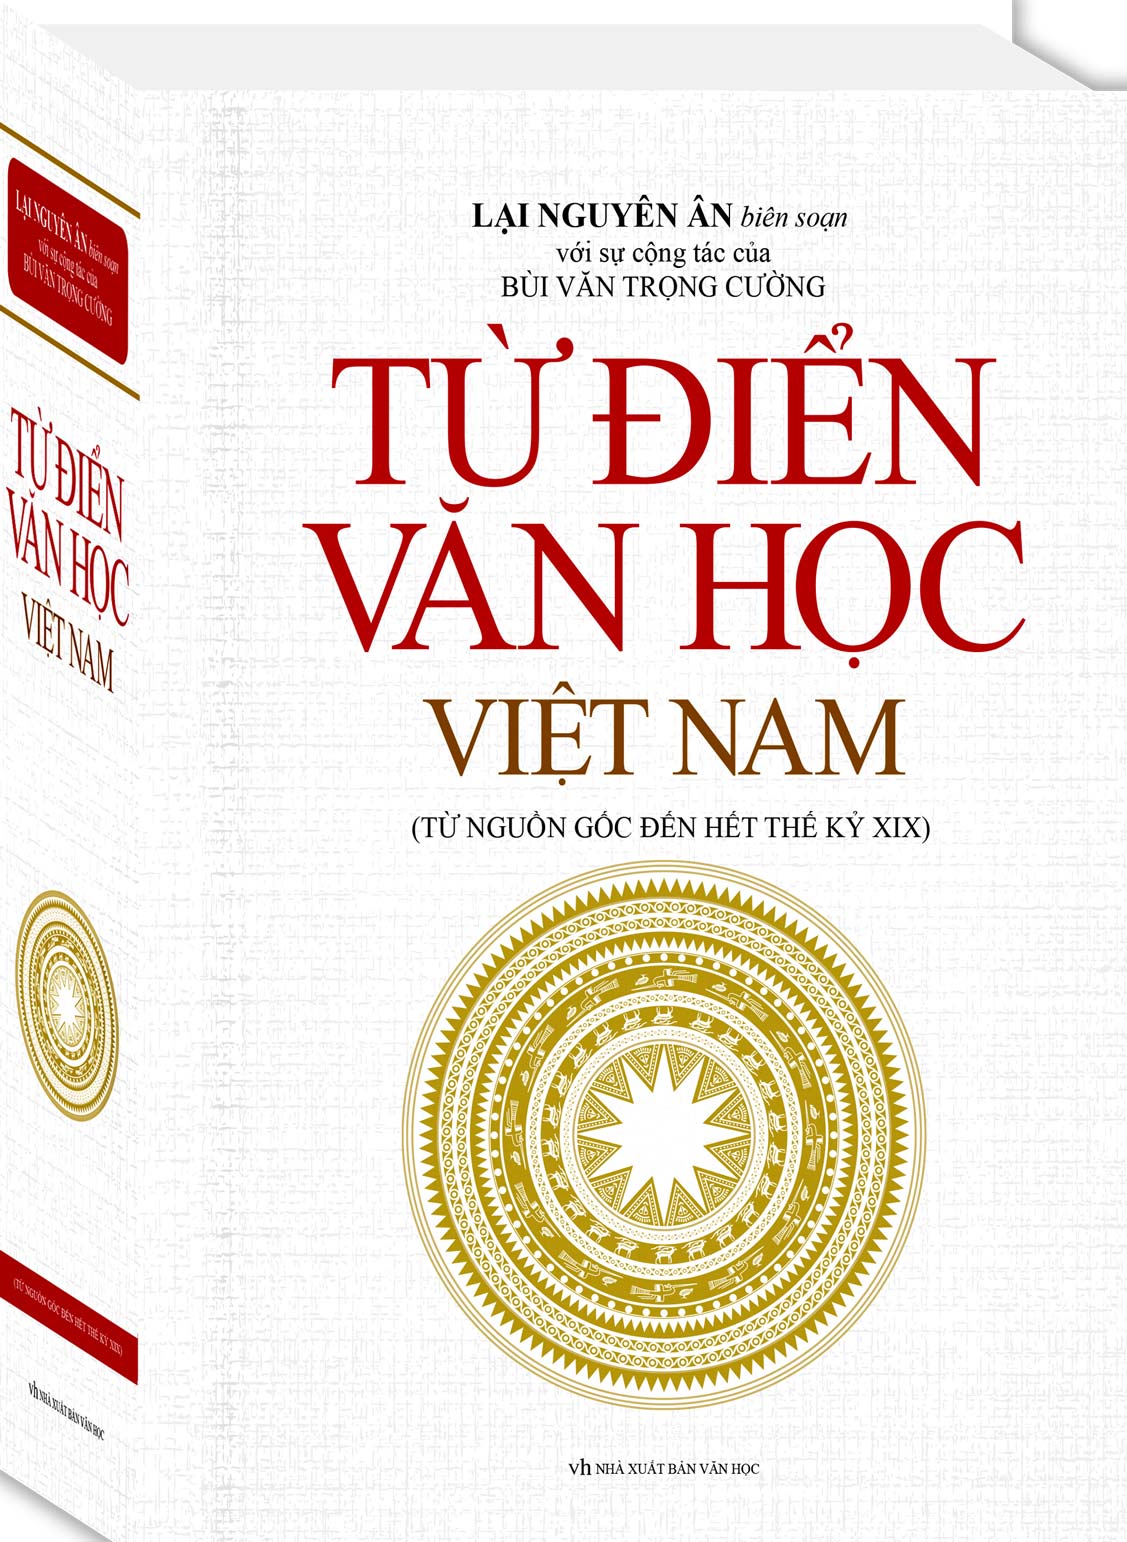 Từ Điển Văn Học Việt Nam